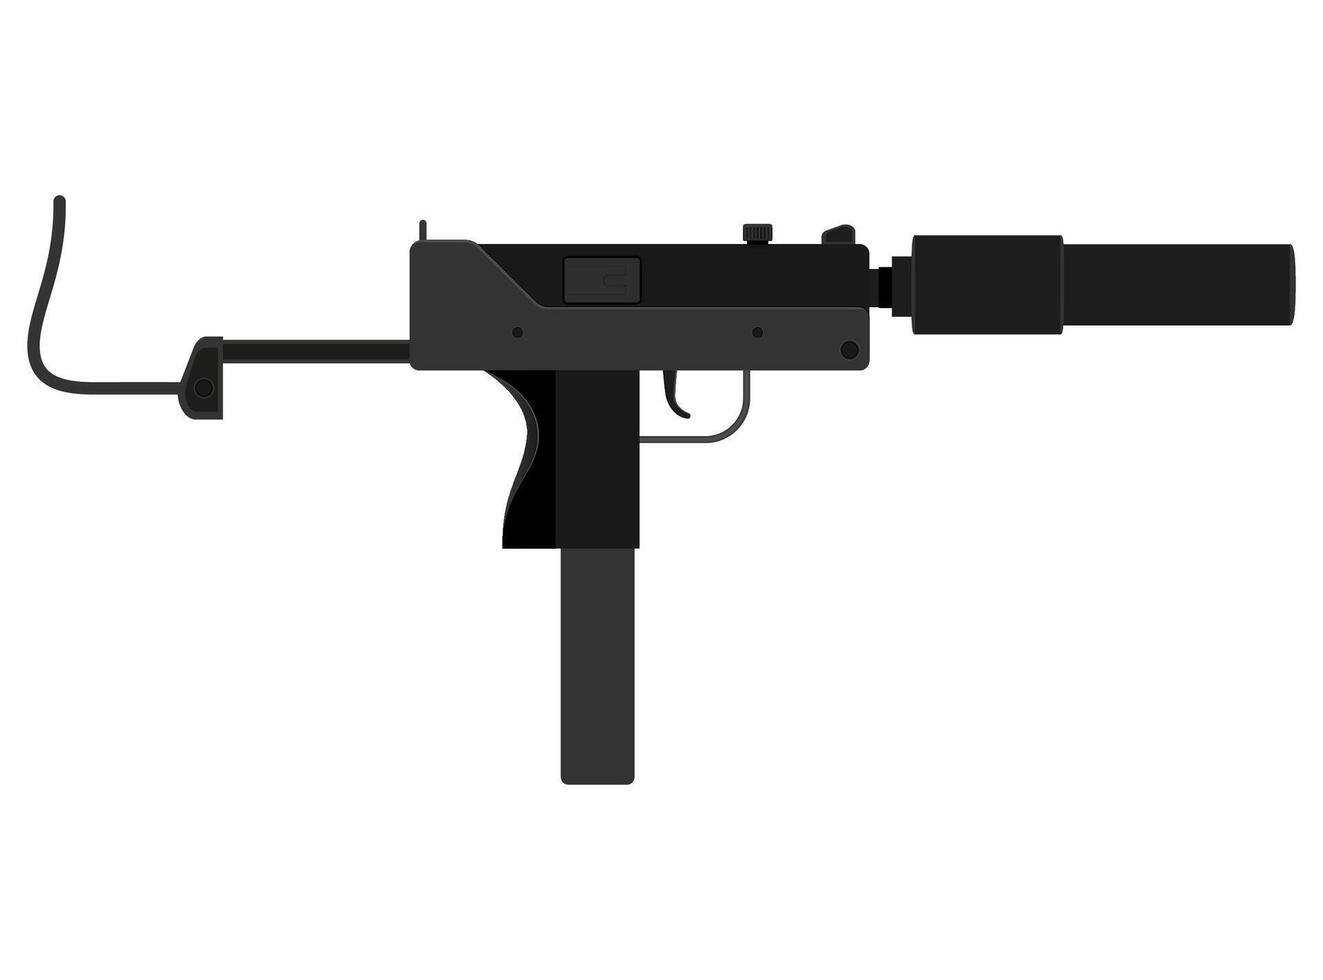 machinepistool handpistool wapens voorraad vectorillustratie geïsoleerd op een witte achtergrond vector